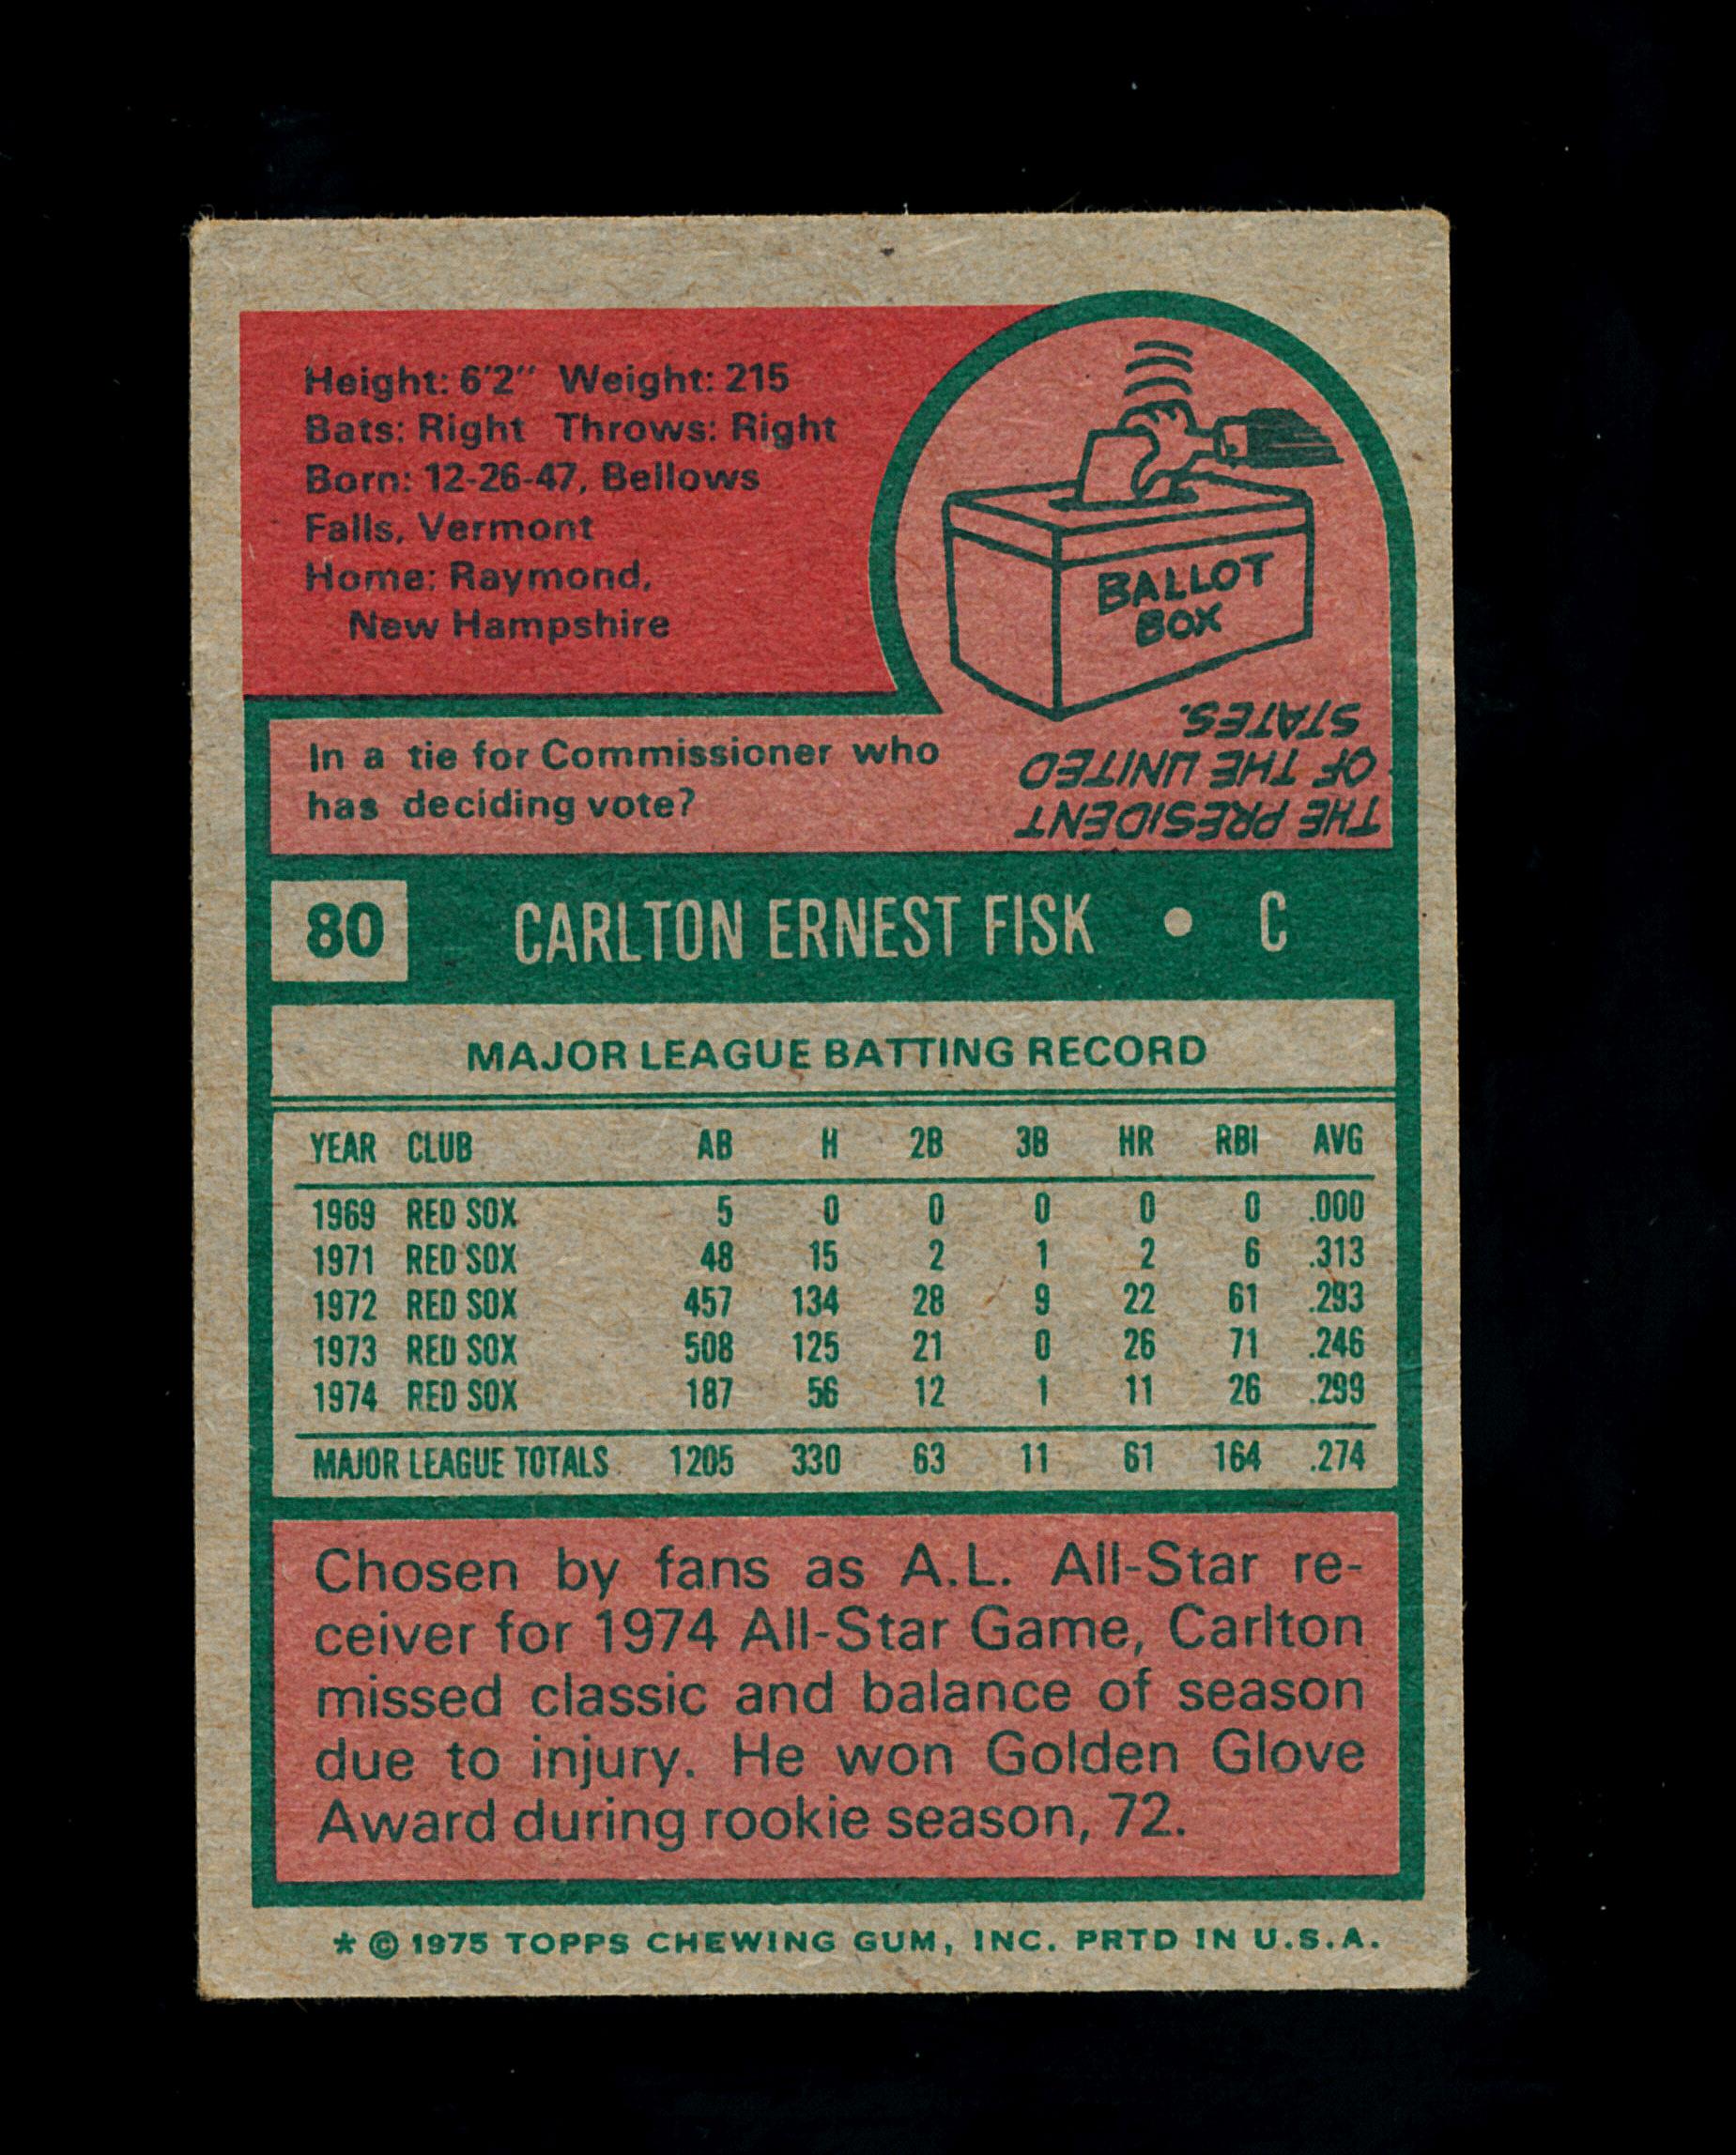 1975 Topps Mini Baseball Card #80 Hall of Famer Carlton Fisk Boston Red Sox